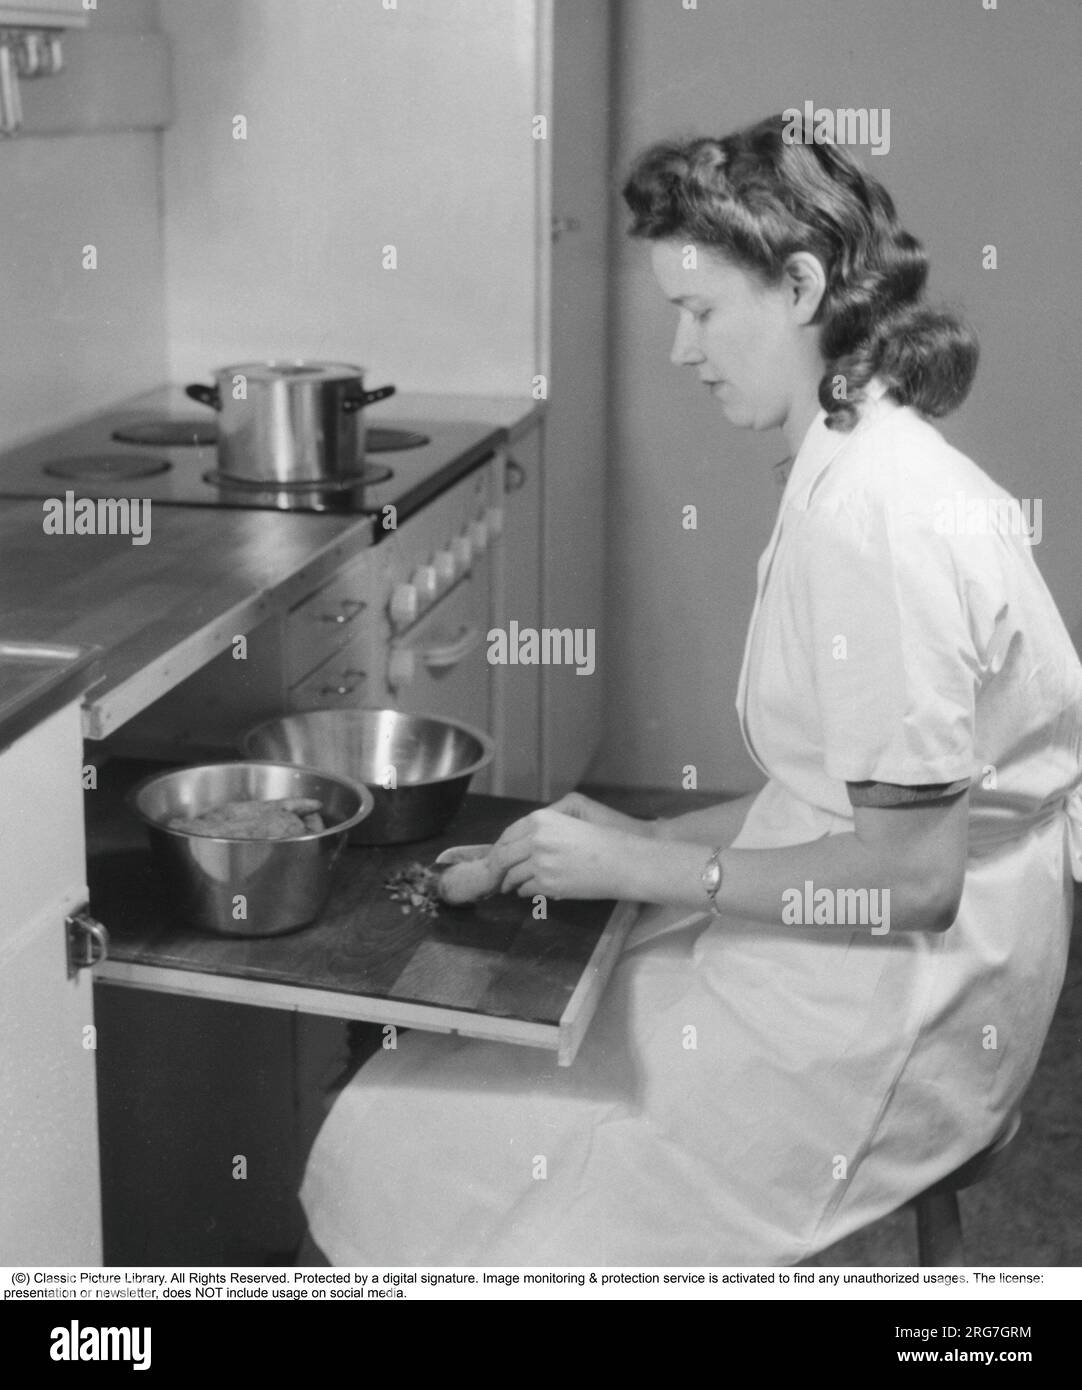 Dans les années 1940 Une femme est vue assise à la planche à découper extensible pratique, préparant les ingrédients pour un dîner. Suède 1944. Banque D'Images